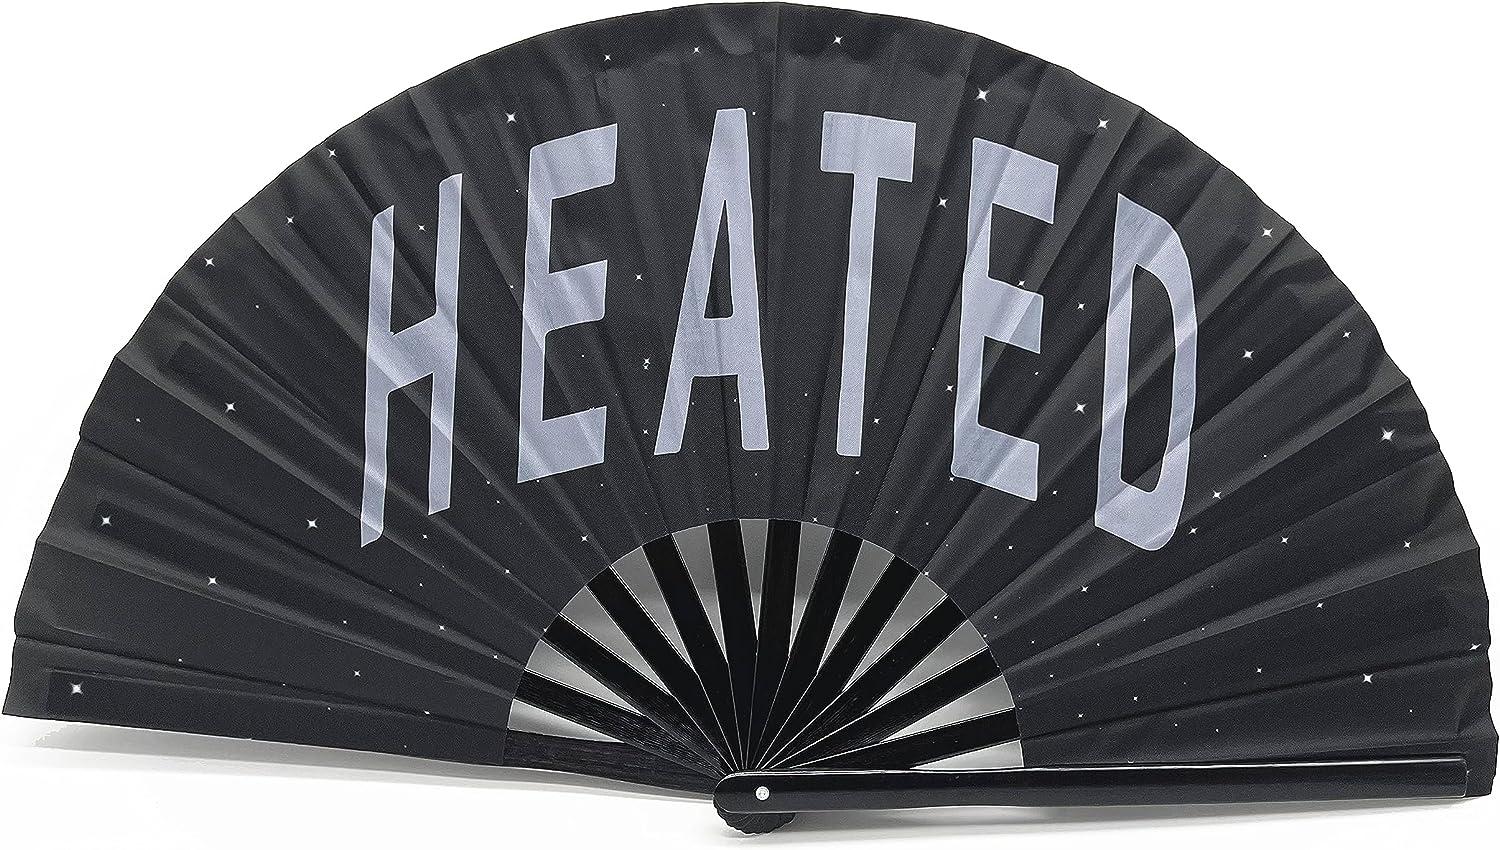 Um ventilador preto brilhante que diz "HEATED"